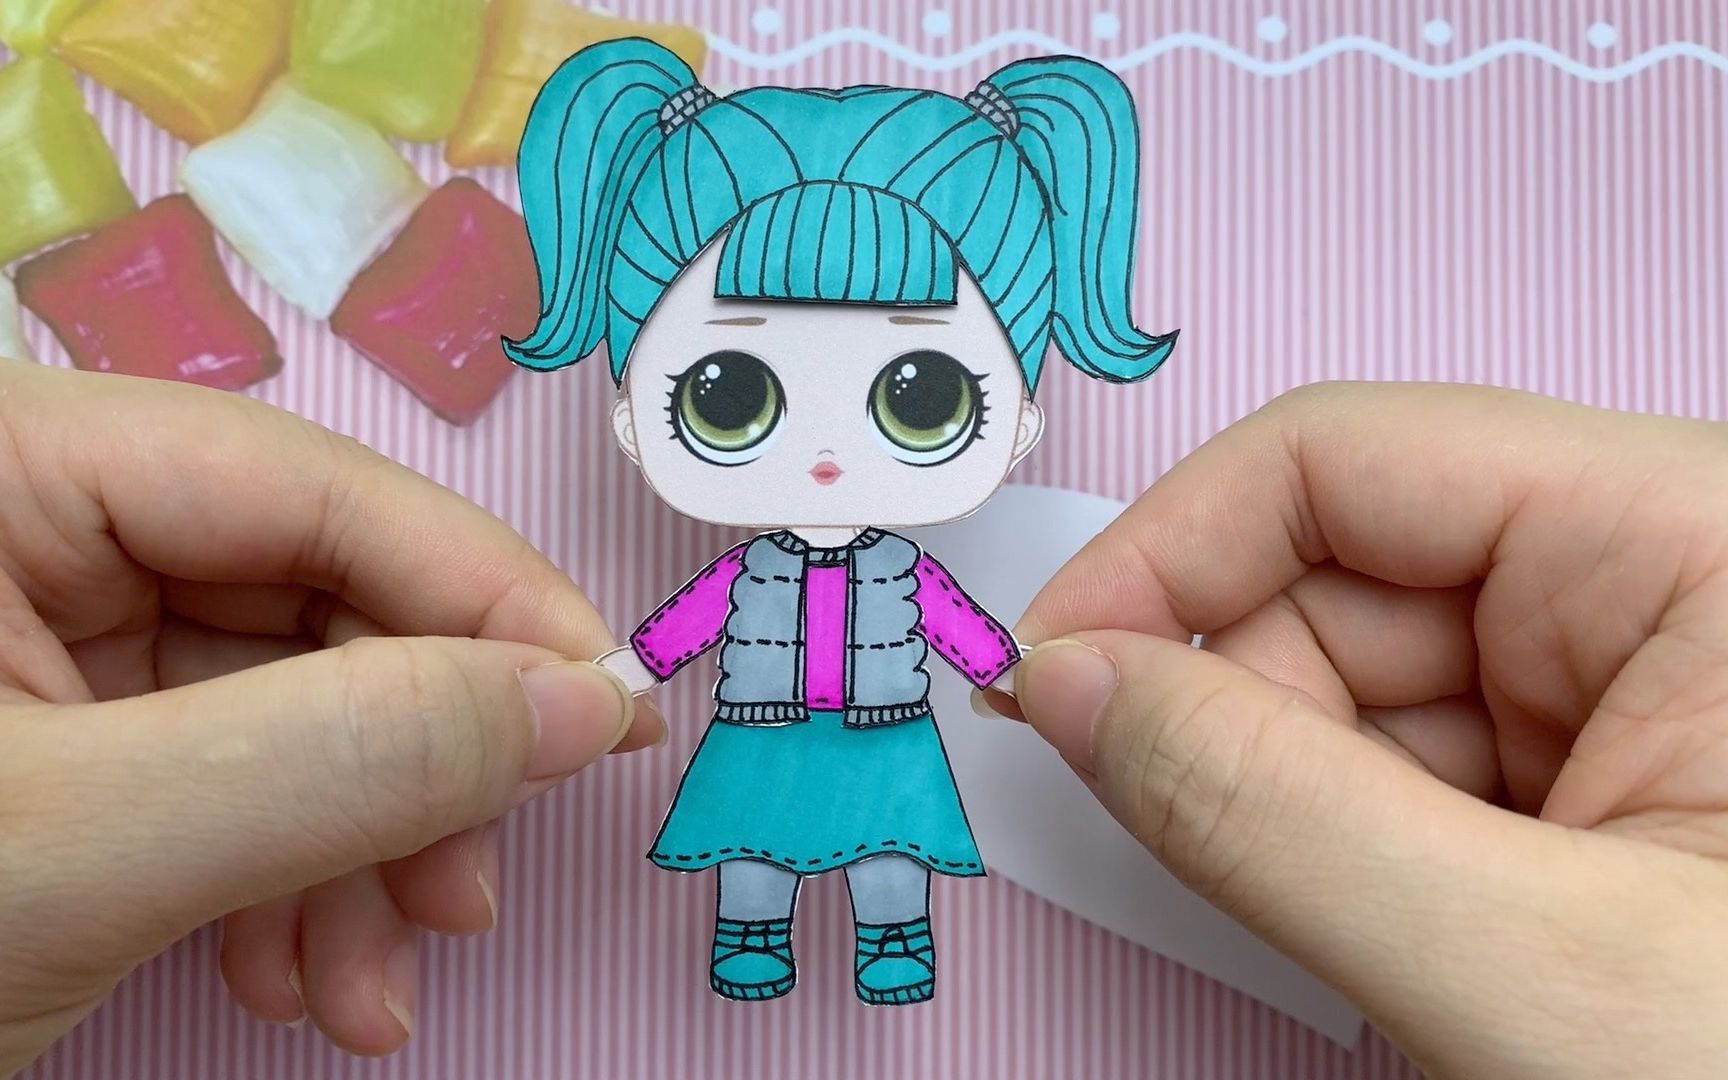 纸娃娃创意手工:给惊喜娃娃制作绿色头发,小马甲和连衣裙